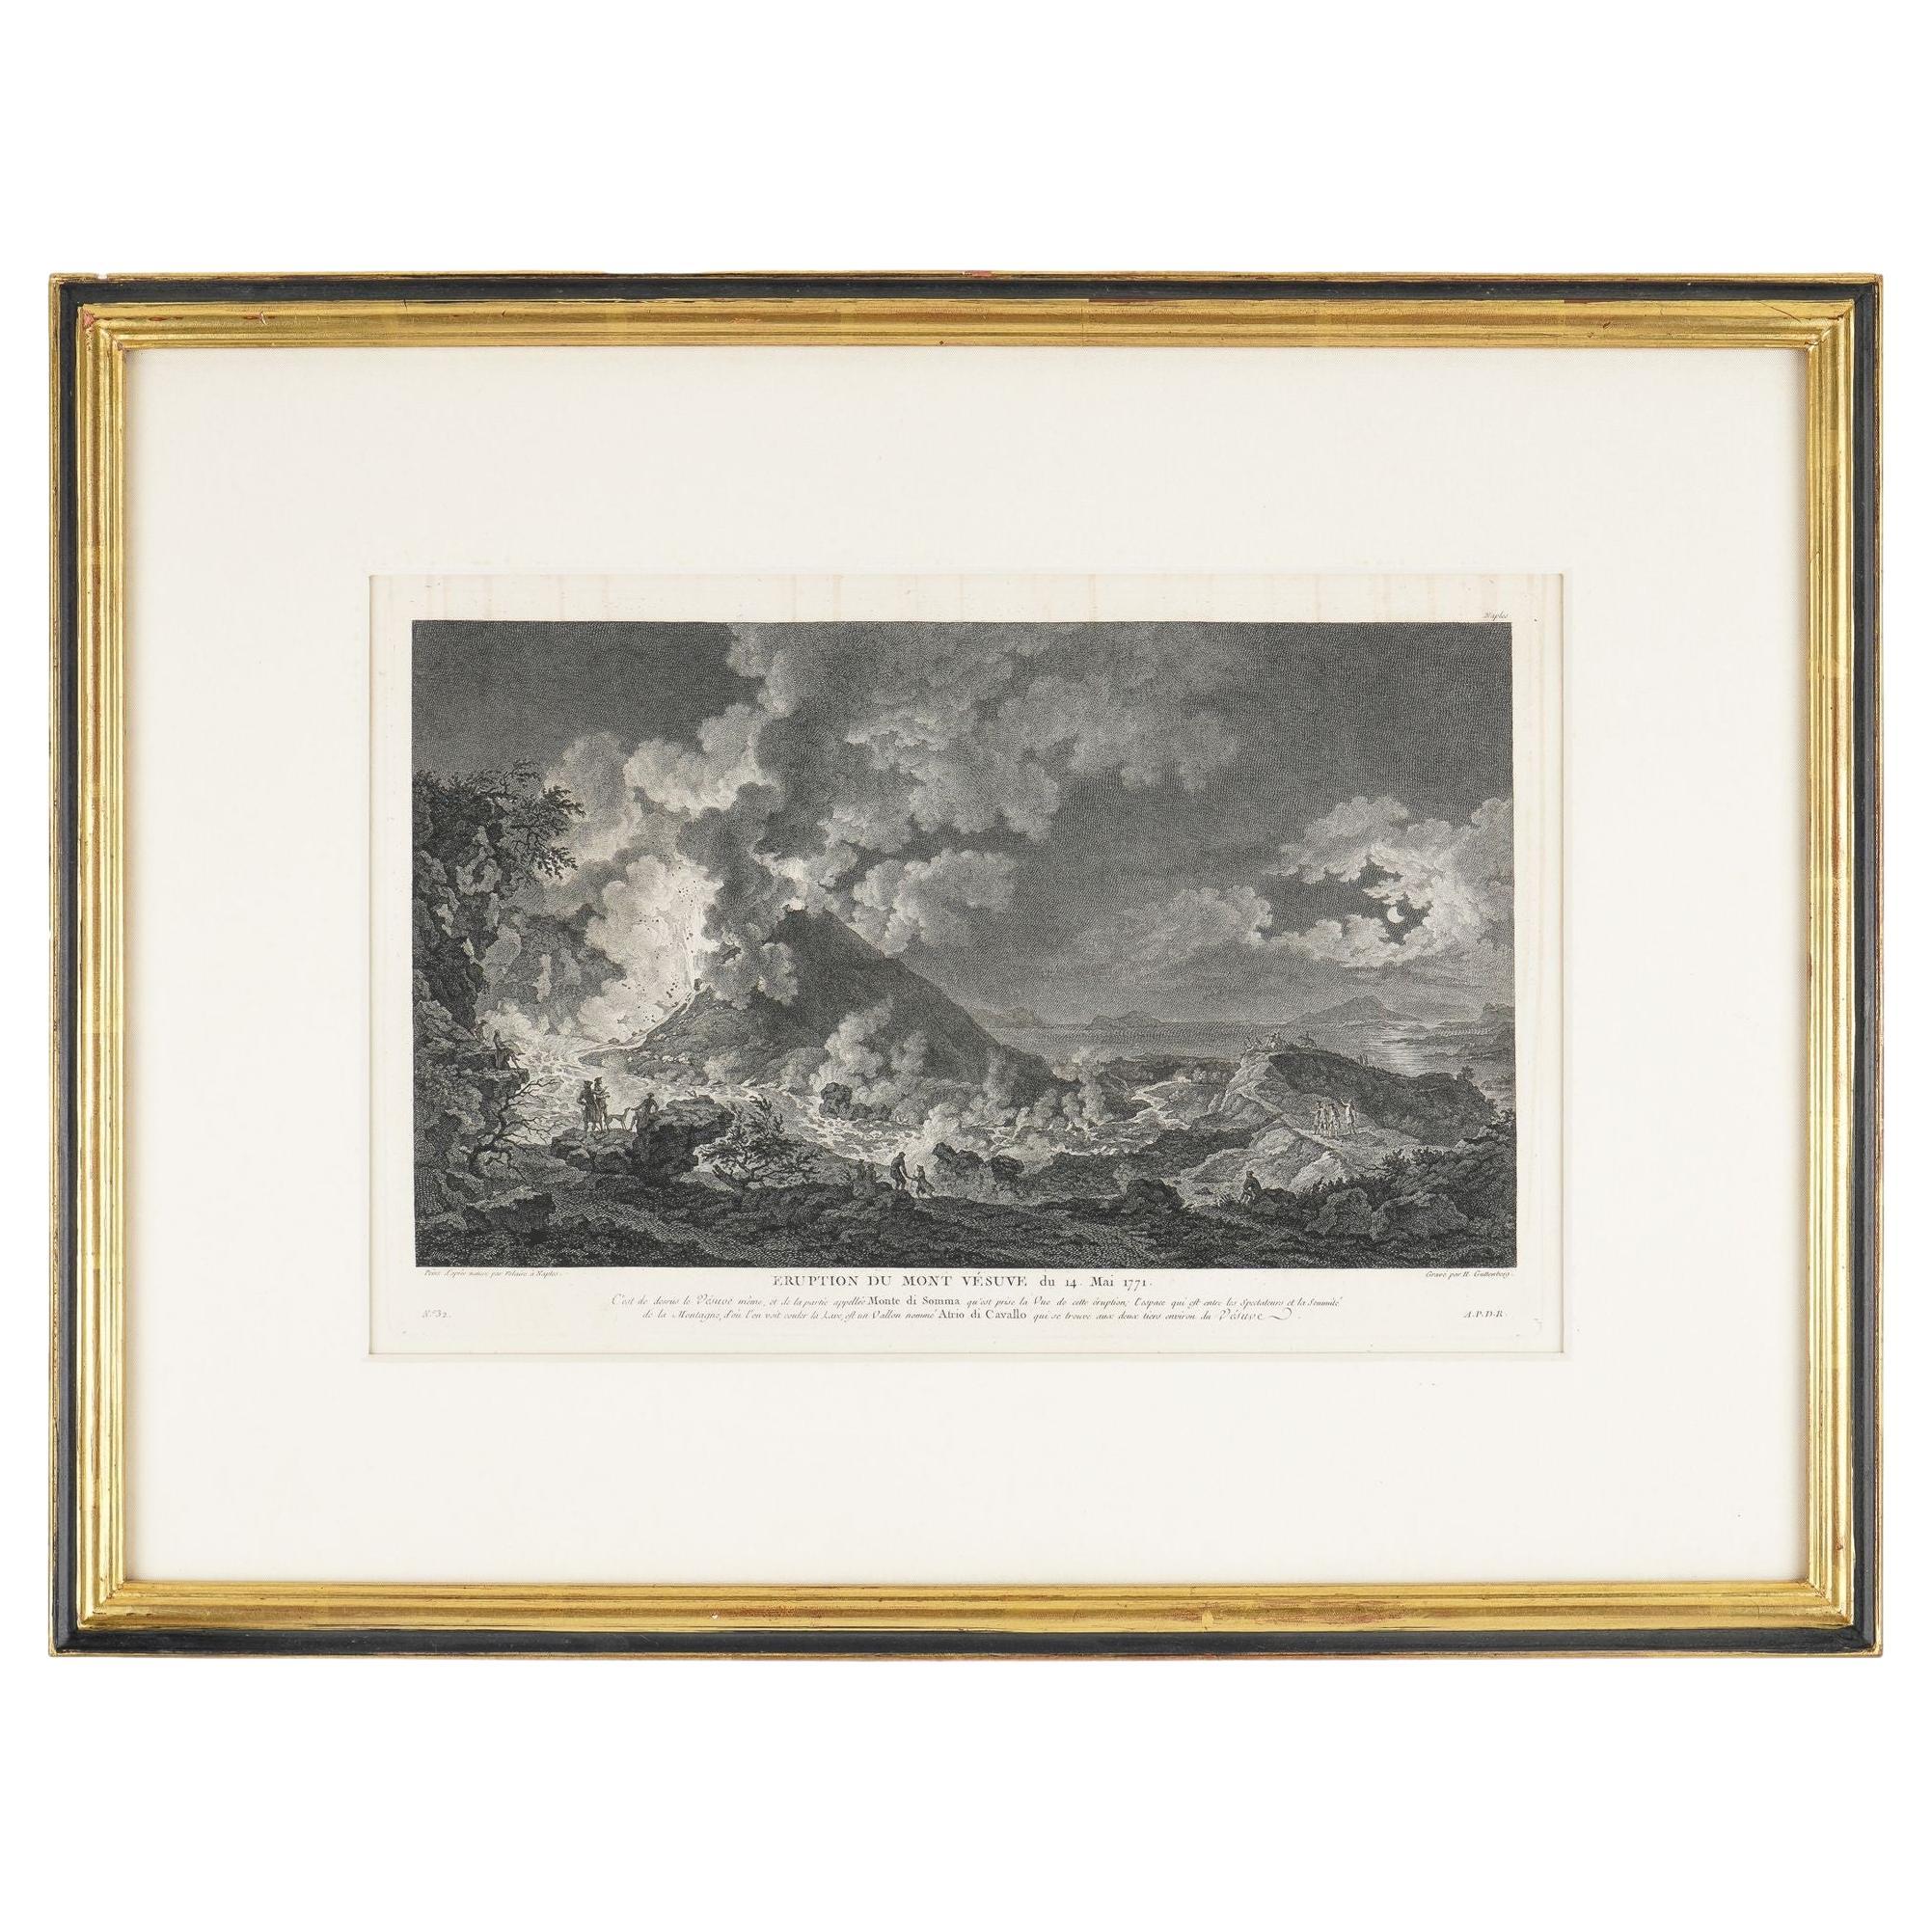 The Eruption of Vesuvius 14 May 1771 by Heinrich Guttenberg, c. 1800